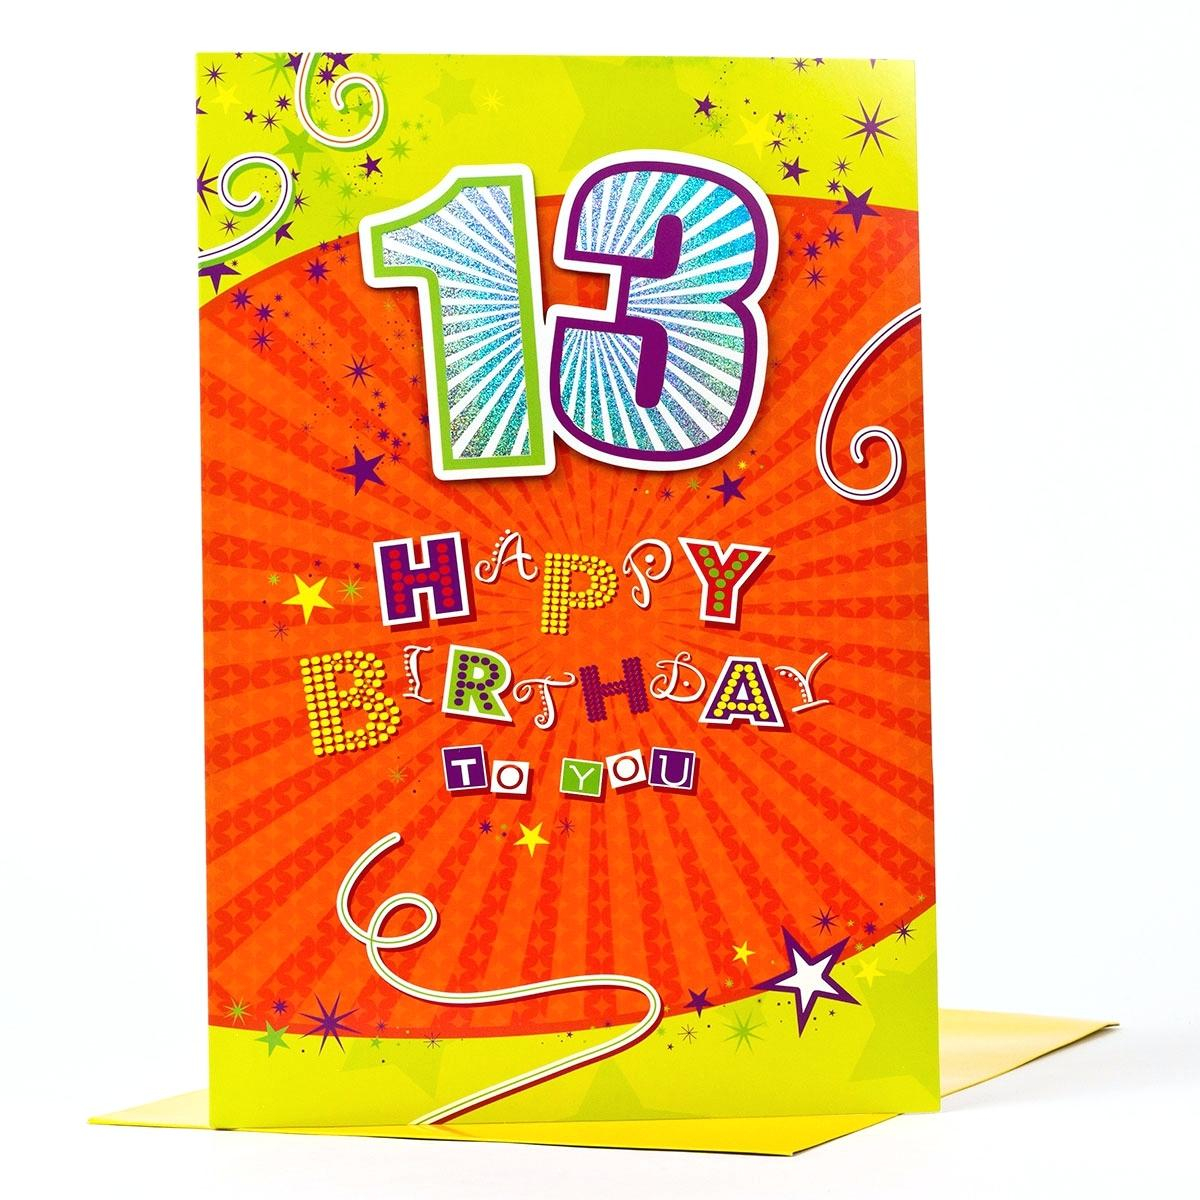 13 Birthday Card Ideas 13th Birthday Card Messages Elegant Ideas For Th Son Skystudio